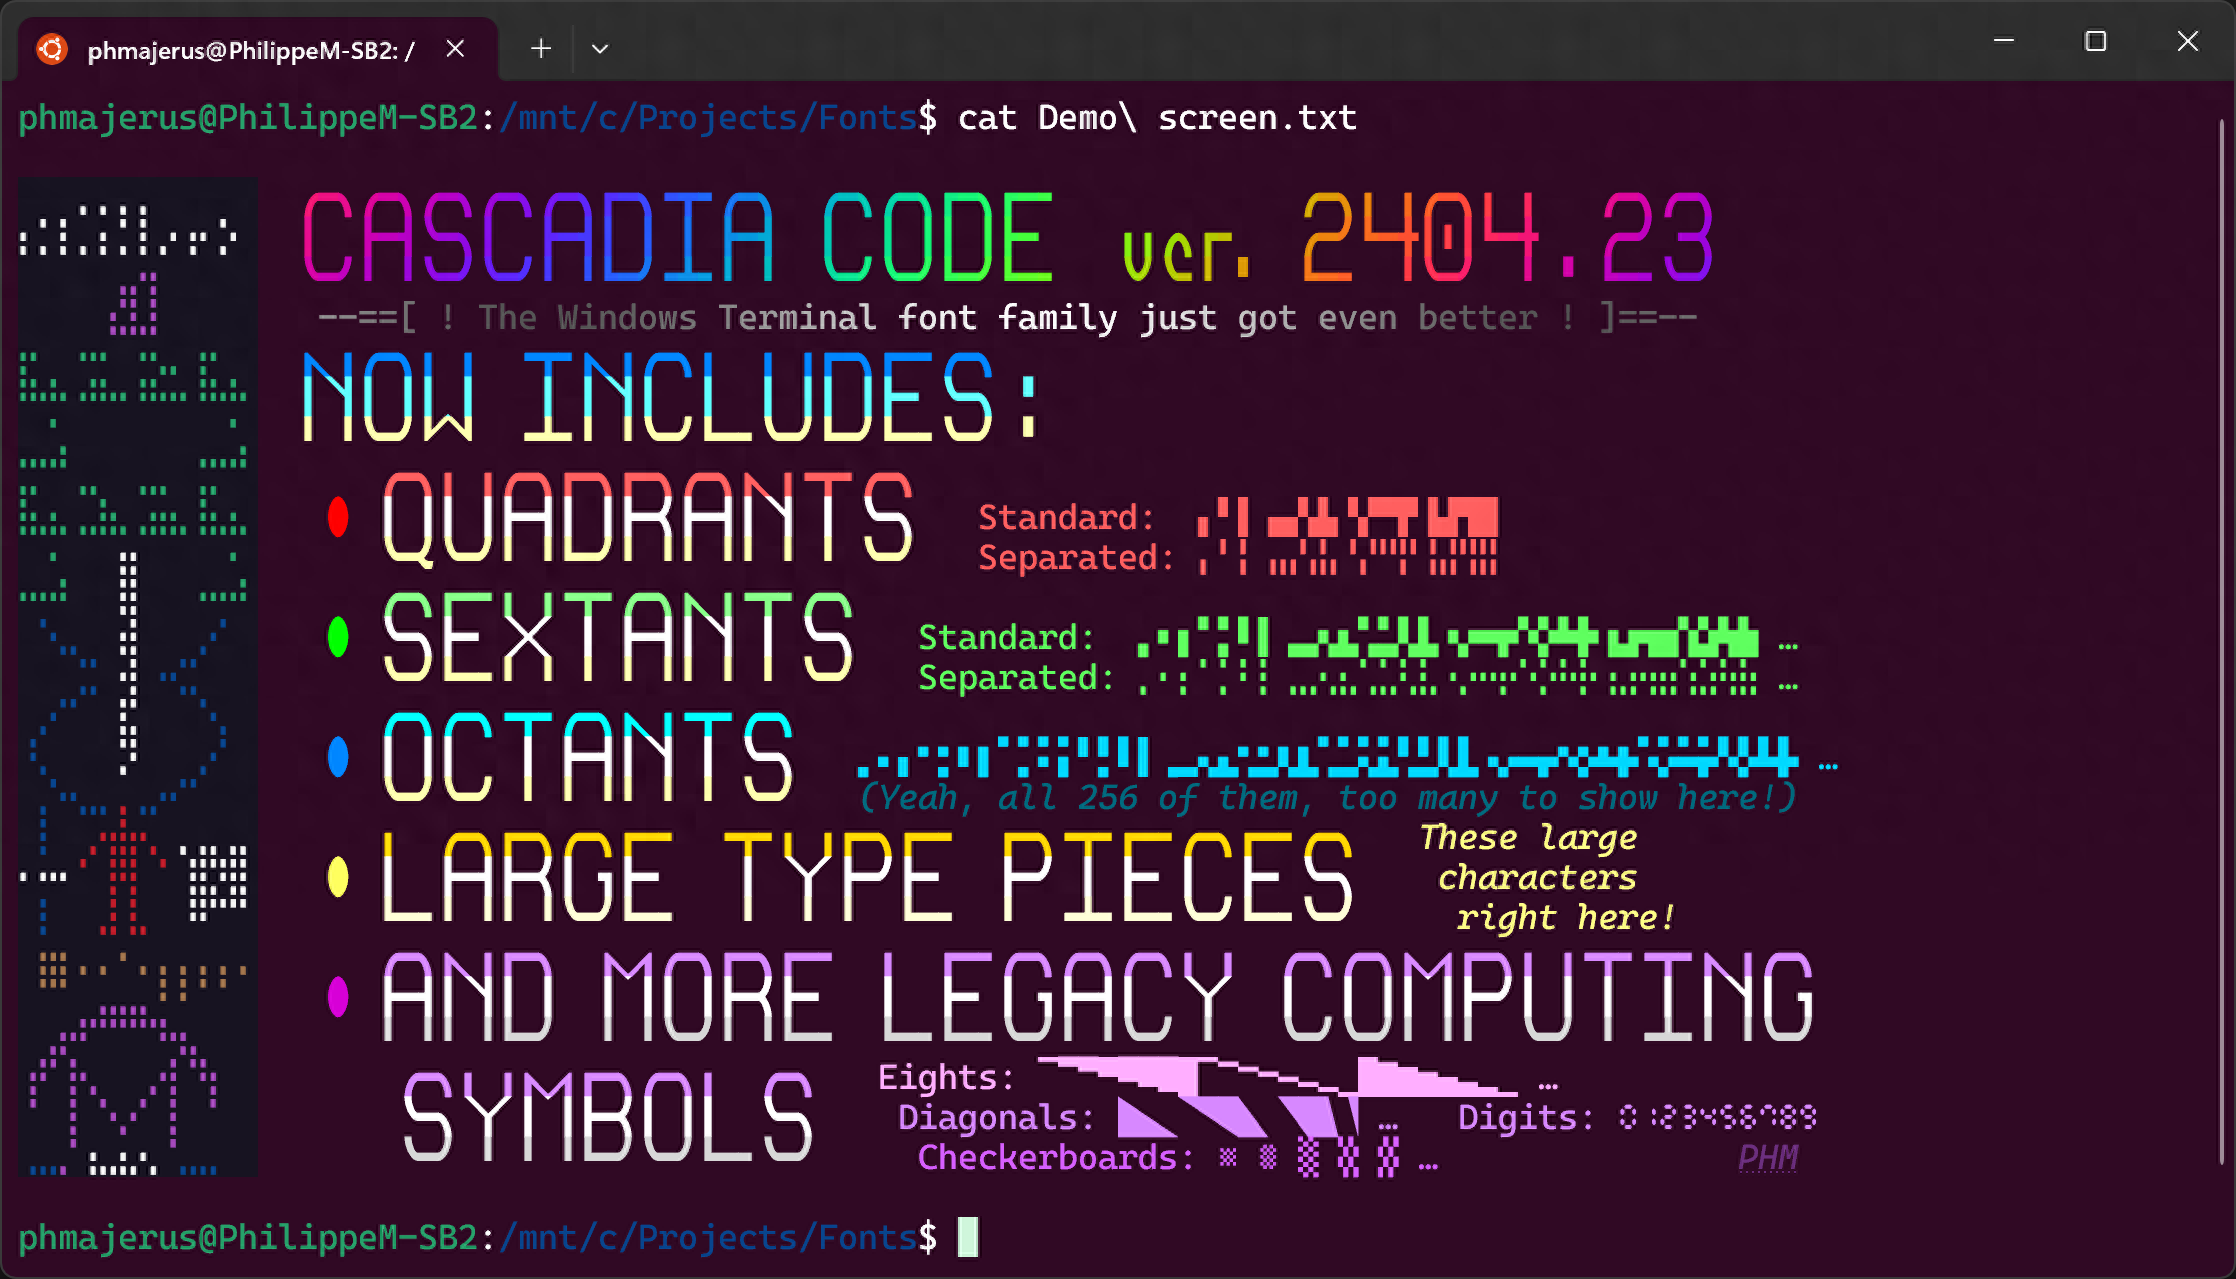 微软更新Cascadia Code：面向开发人员的开源字体 - 万事屋 - 万事屋